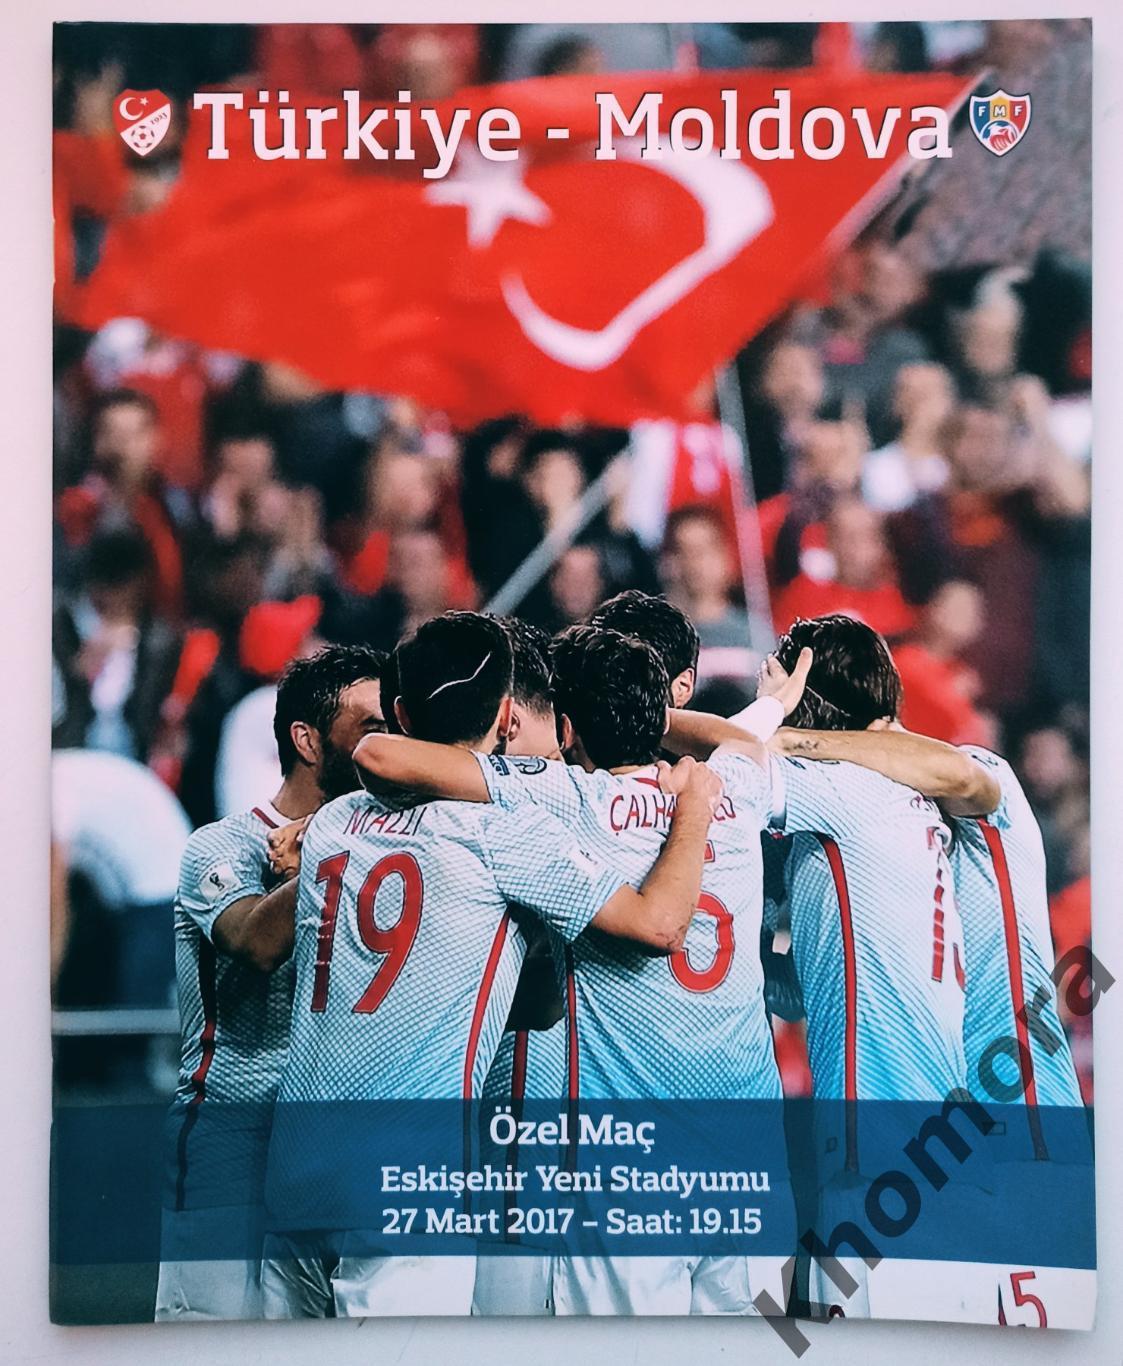 Турция - Молдова - 27.03.2017 - официальная программа РЕДКАЯ!